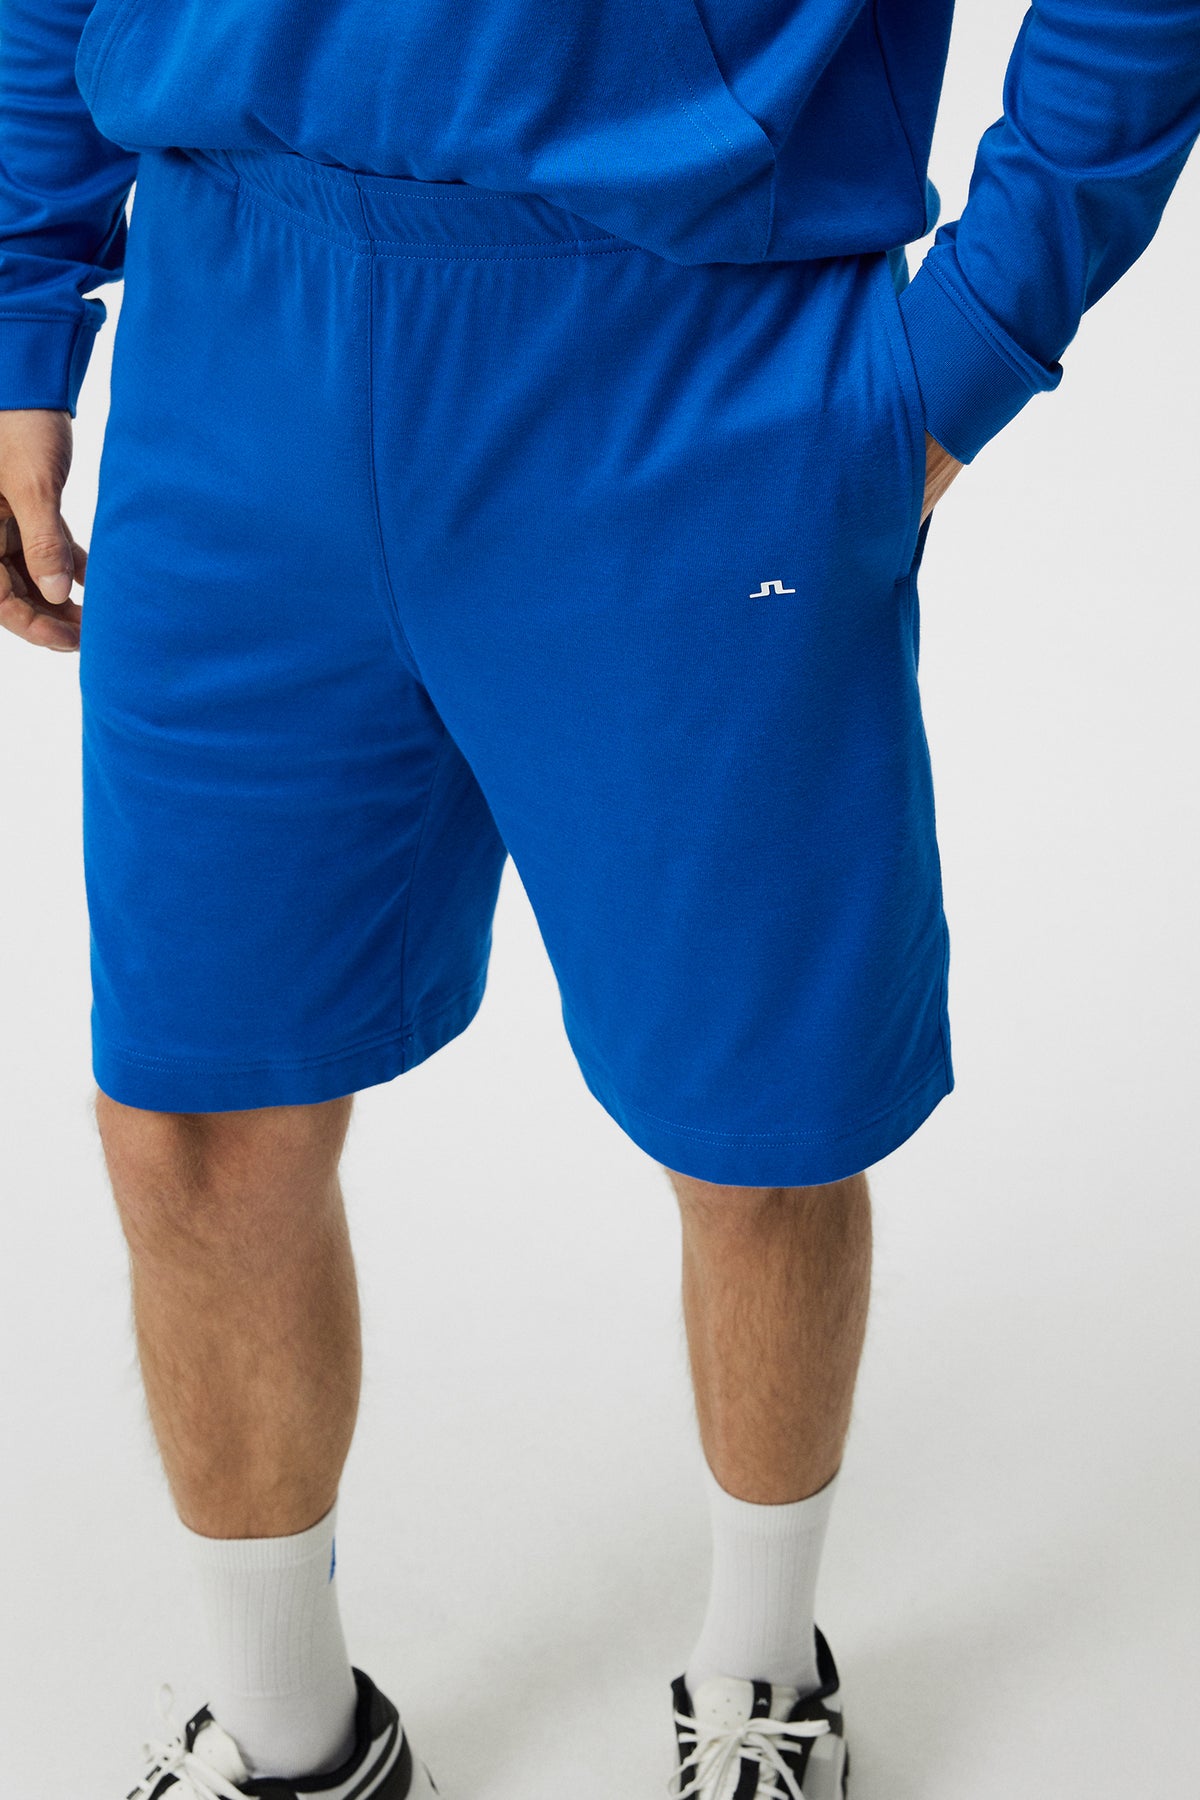 Logo Shorts / Nautical Blue